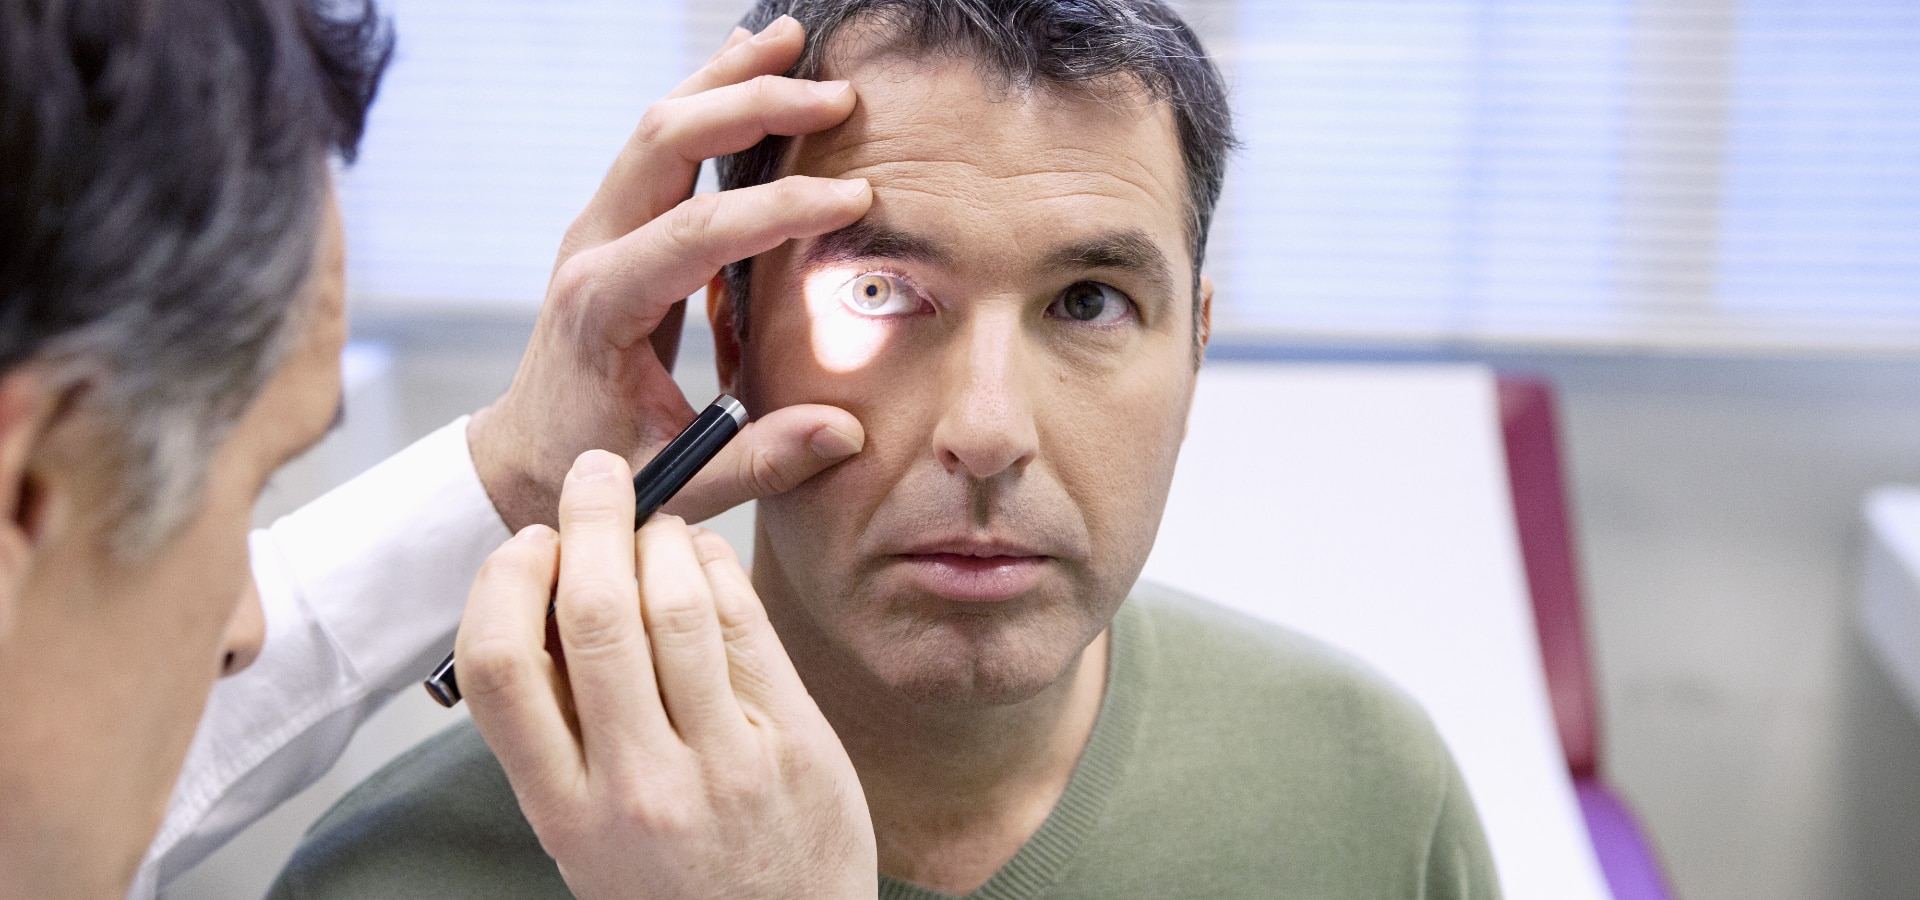 Los chequeos médicos ayudan a cuidar tu salud ocular.